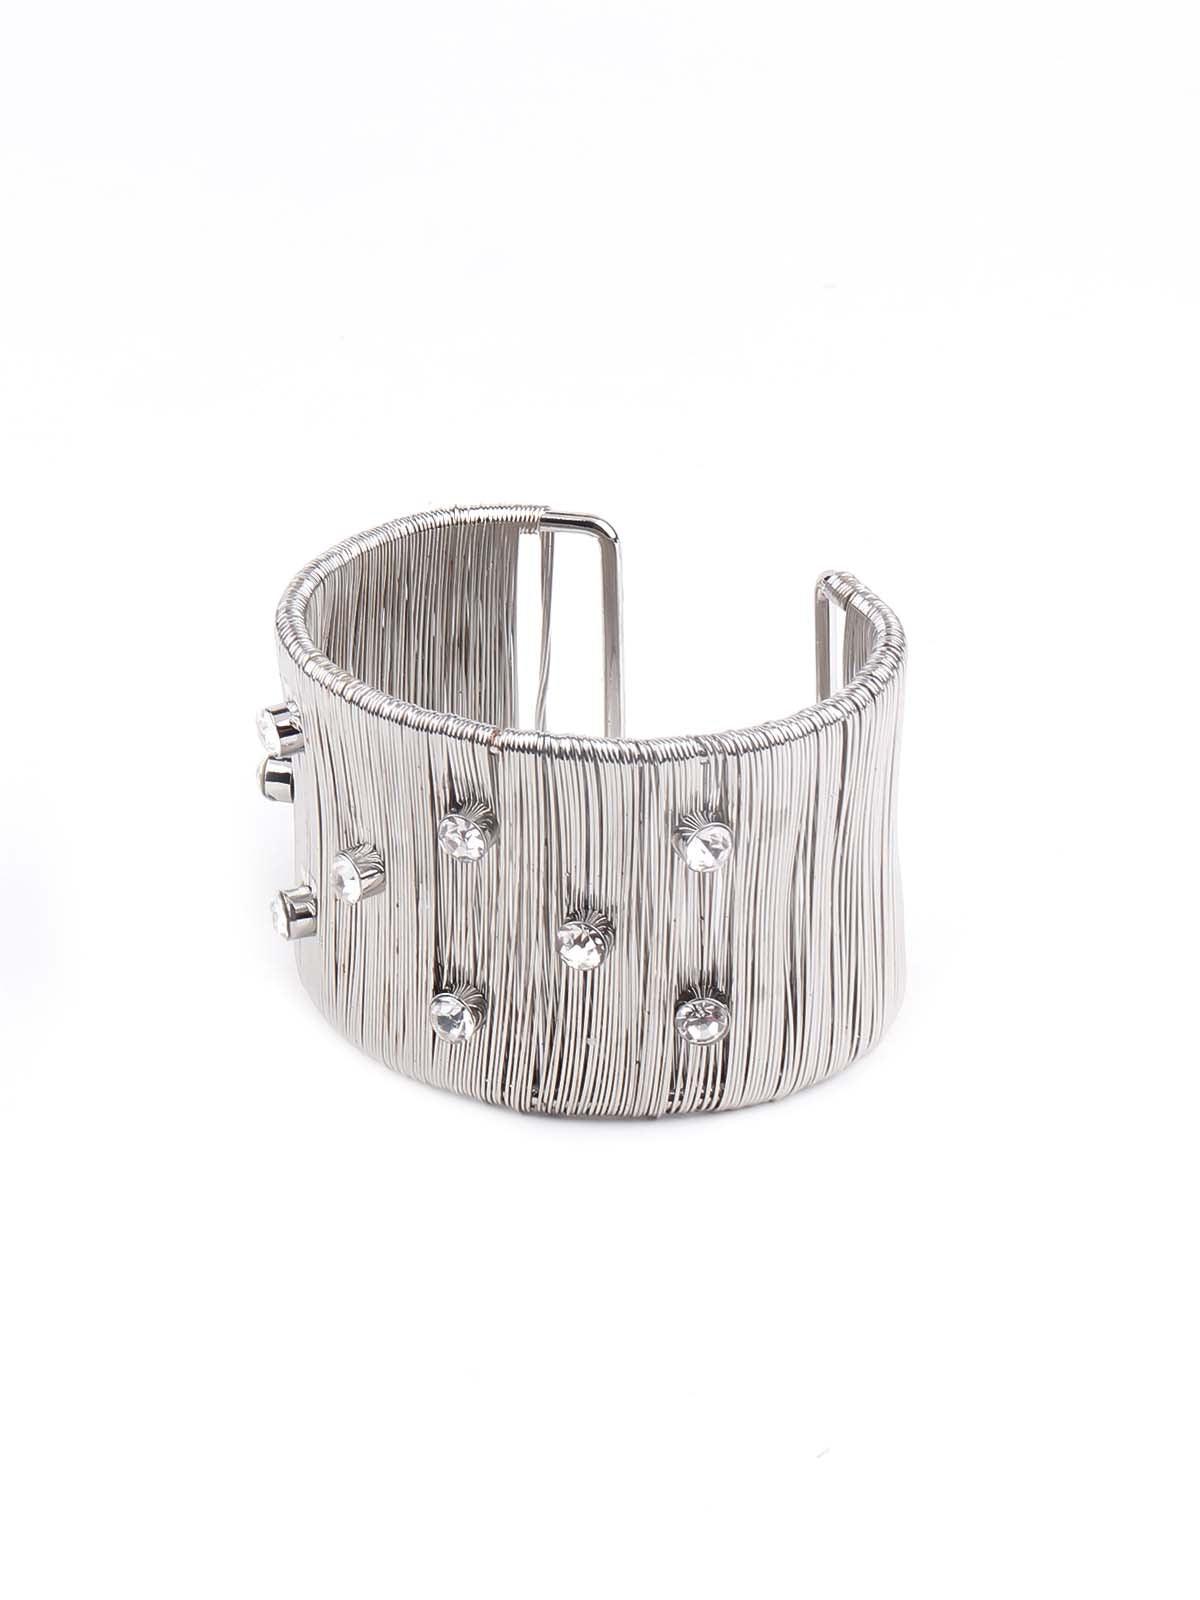 Women's Exquisite Silver Vertical Strings Embellished Bracelet - Odette